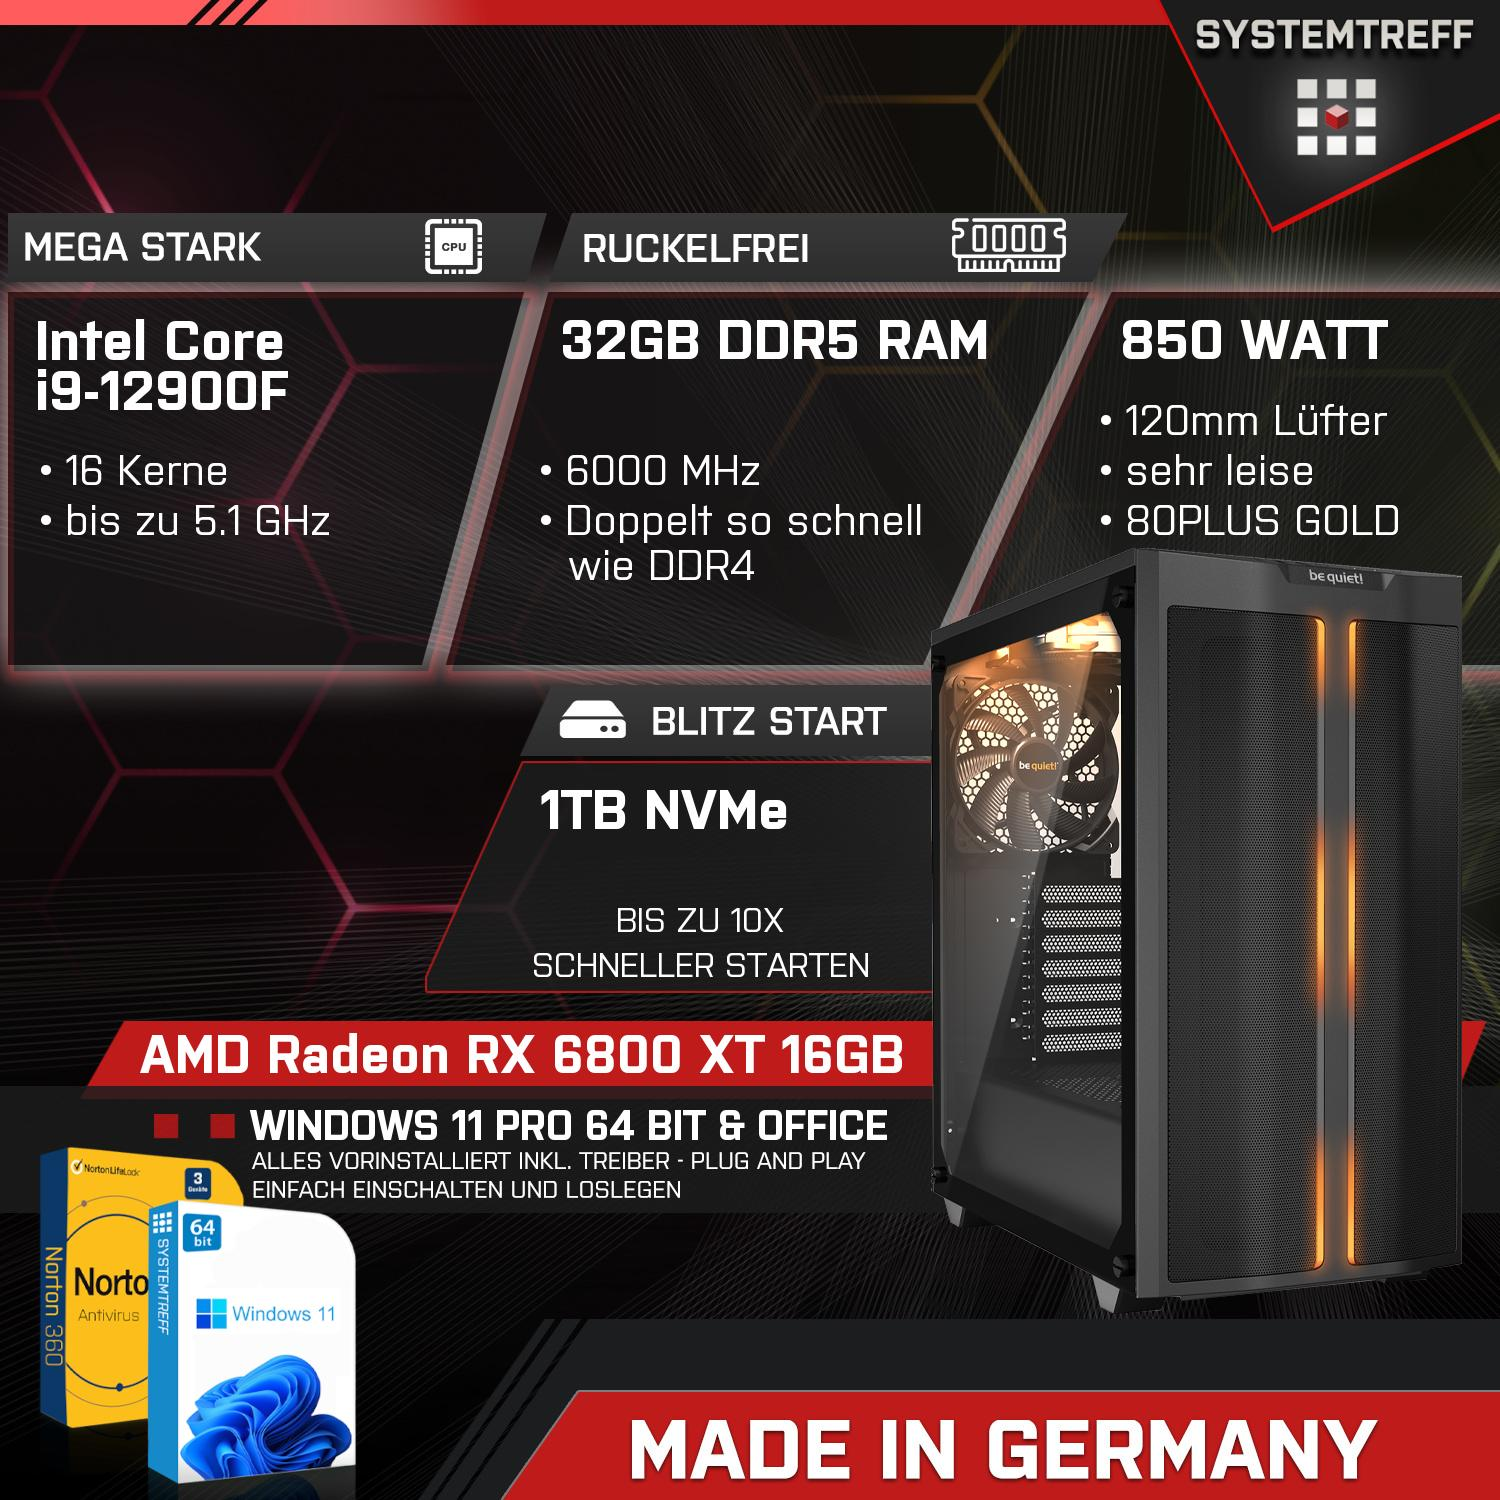 16 PC XT Gaming 1000 16GB AMD GDDR6, mSSD, GB GB Radeon i9-12900F Intel i9-12900F, Komplett 6800 32 Core Komplett Prozessor, GB RX SYSTEMTREFF RAM, mit